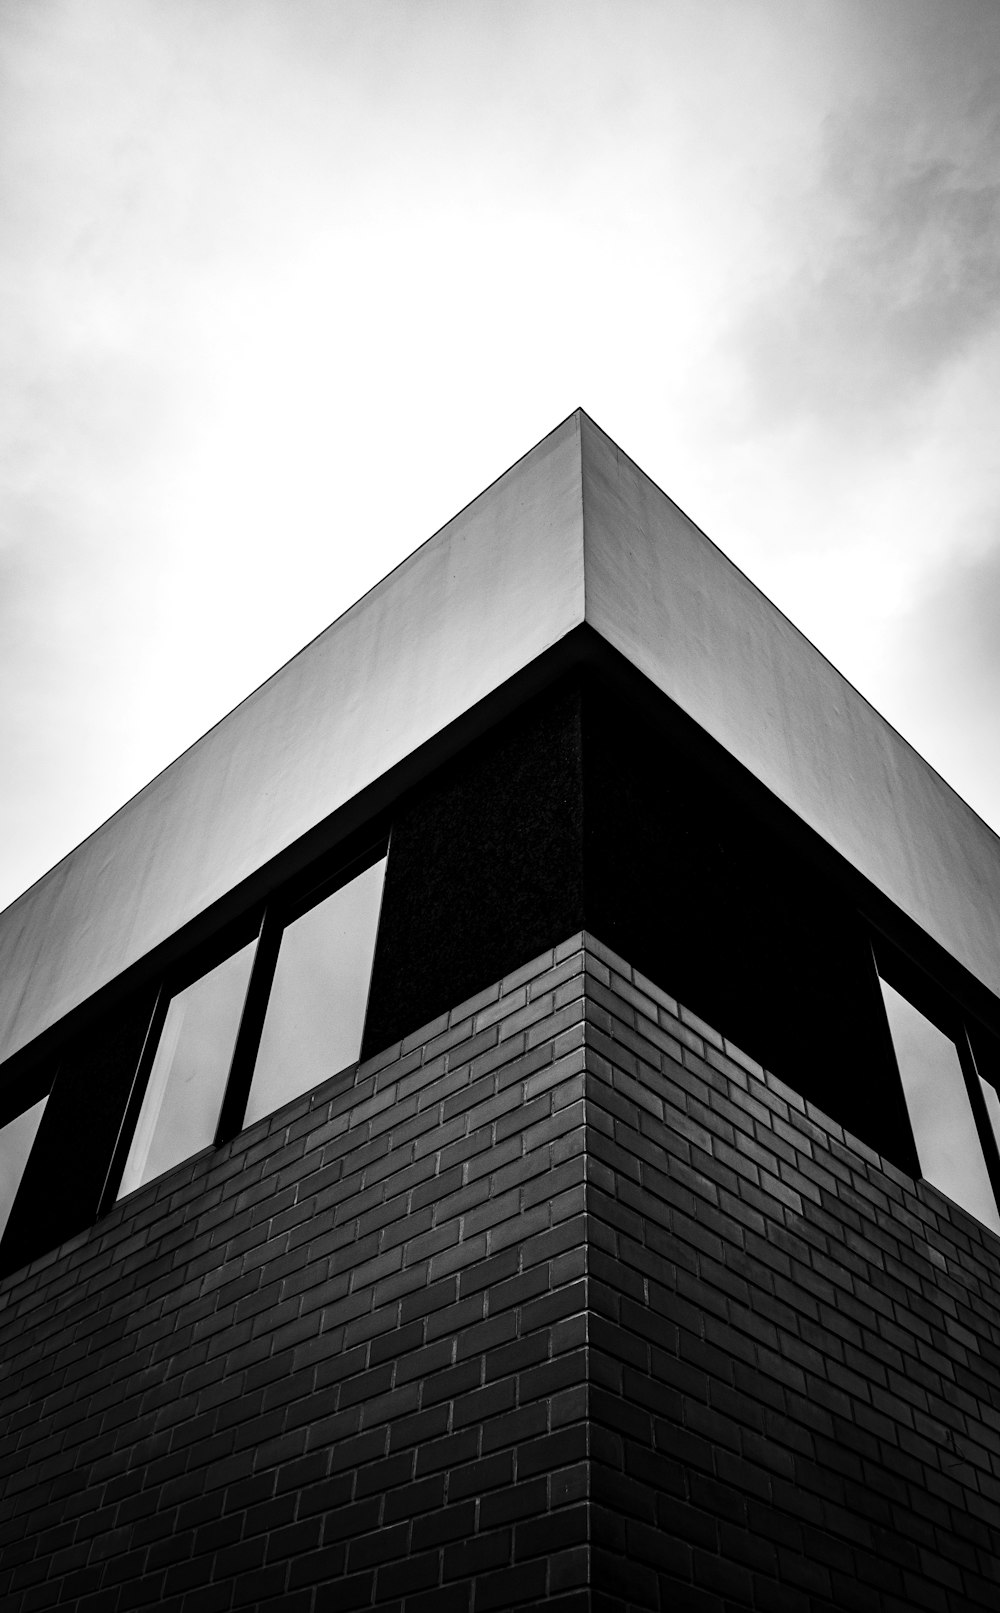 콘크리트 건물의 회색조 사진